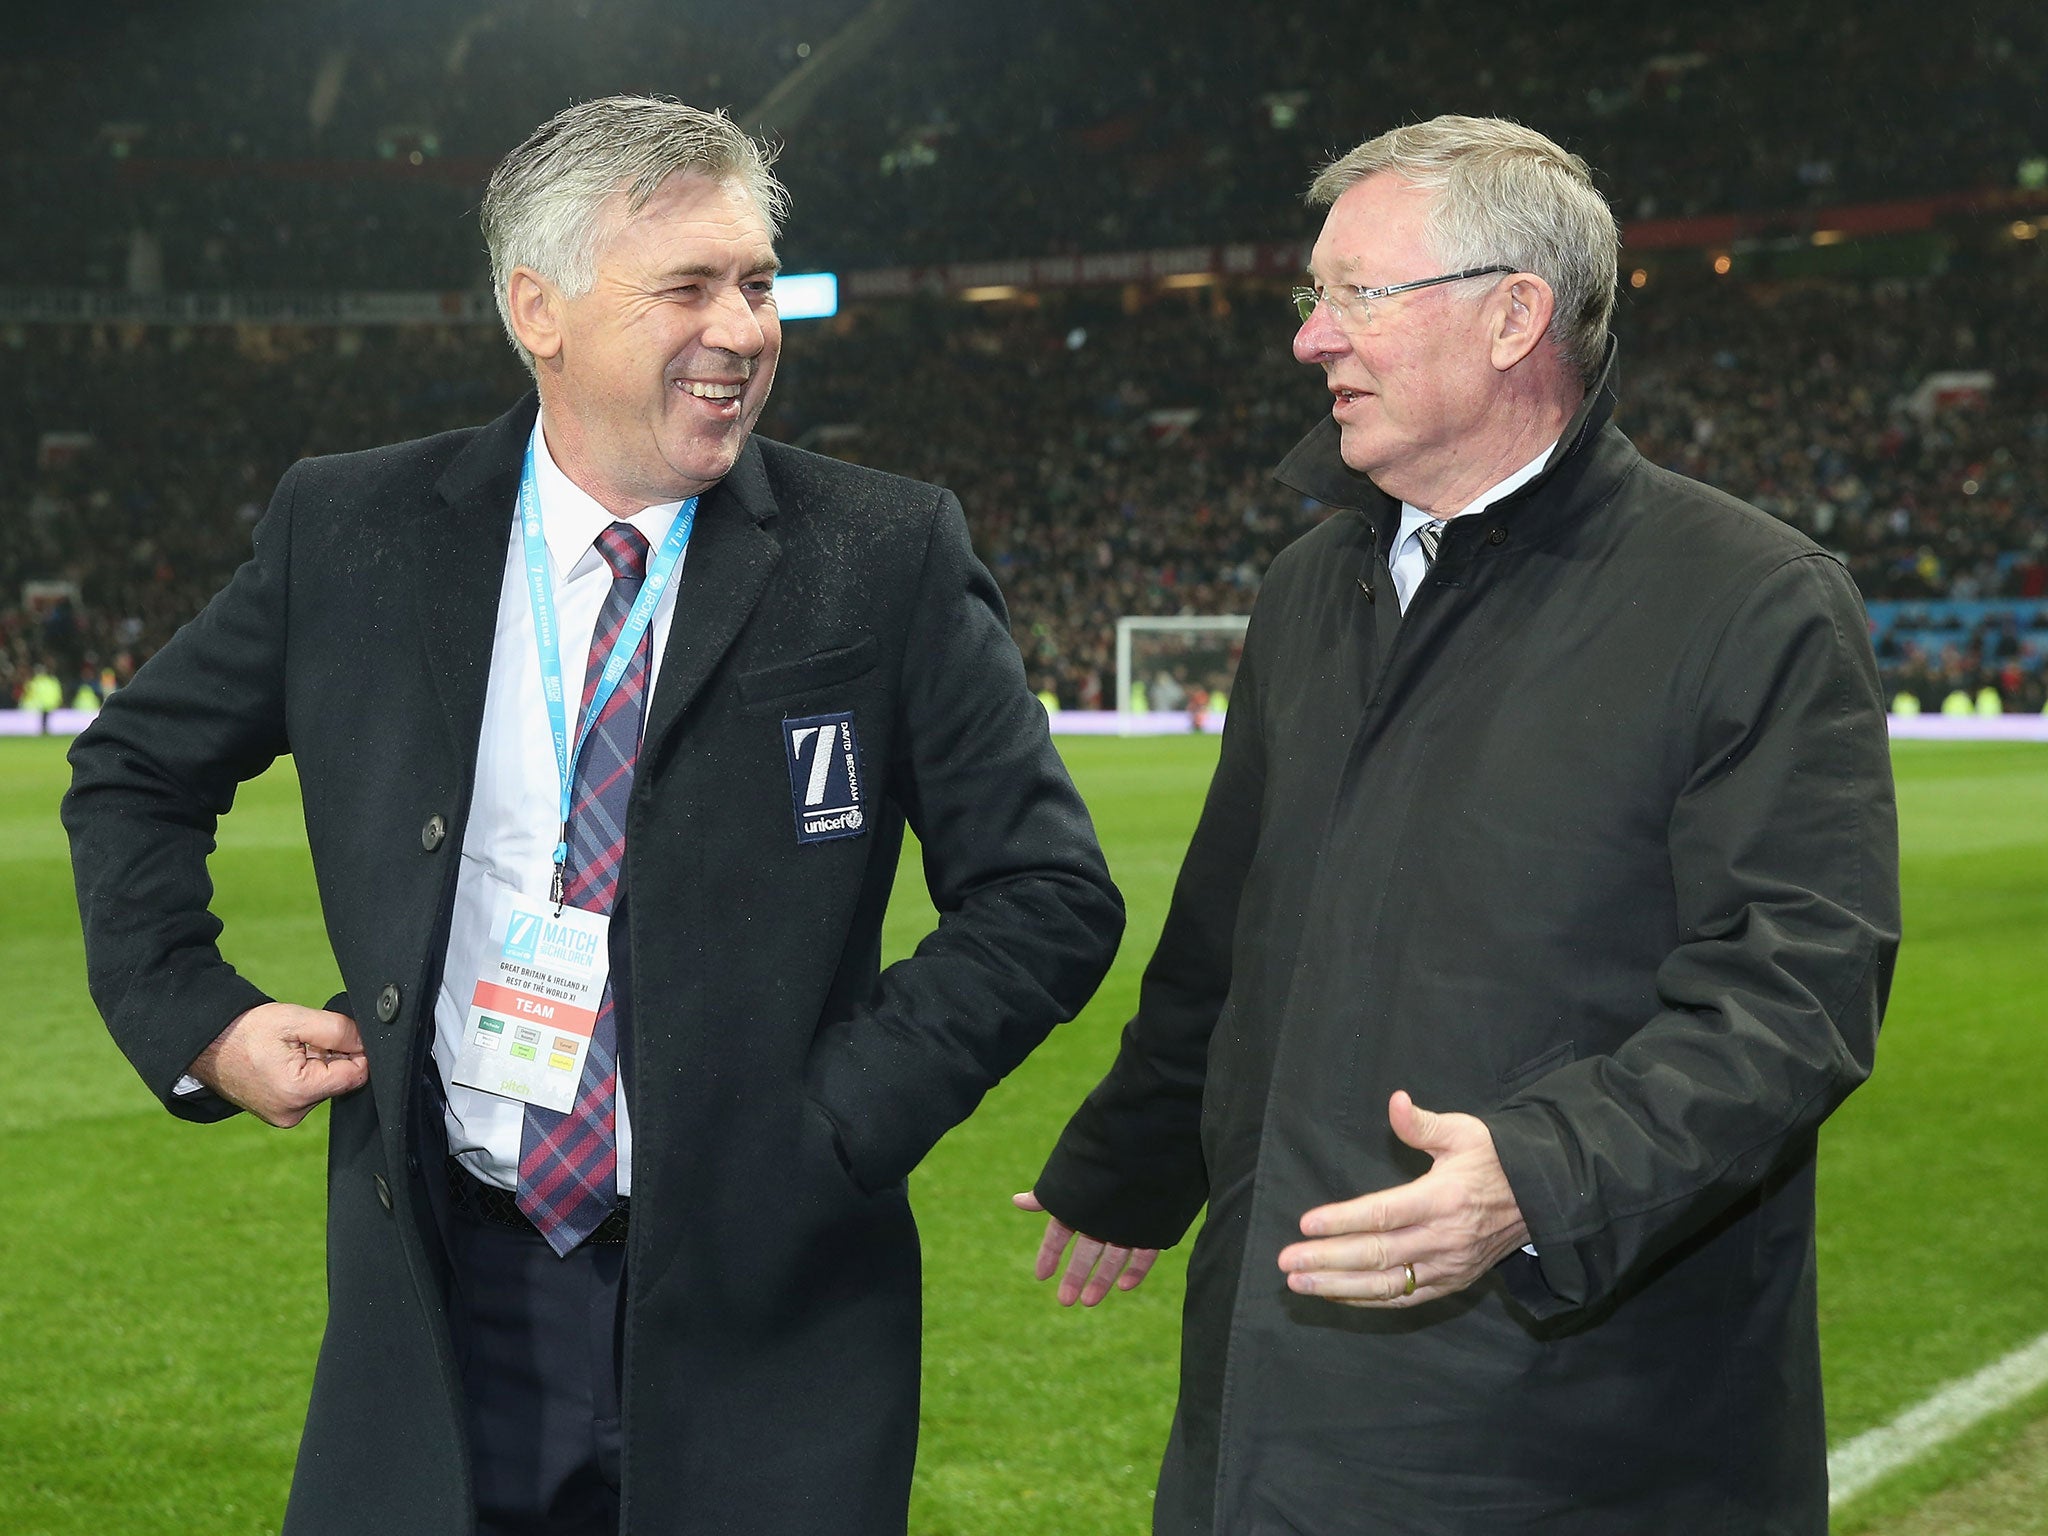 Carlo Ancelotti and Sir Alex Ferguson talks following the Unicef Charity Match at Old Trafford